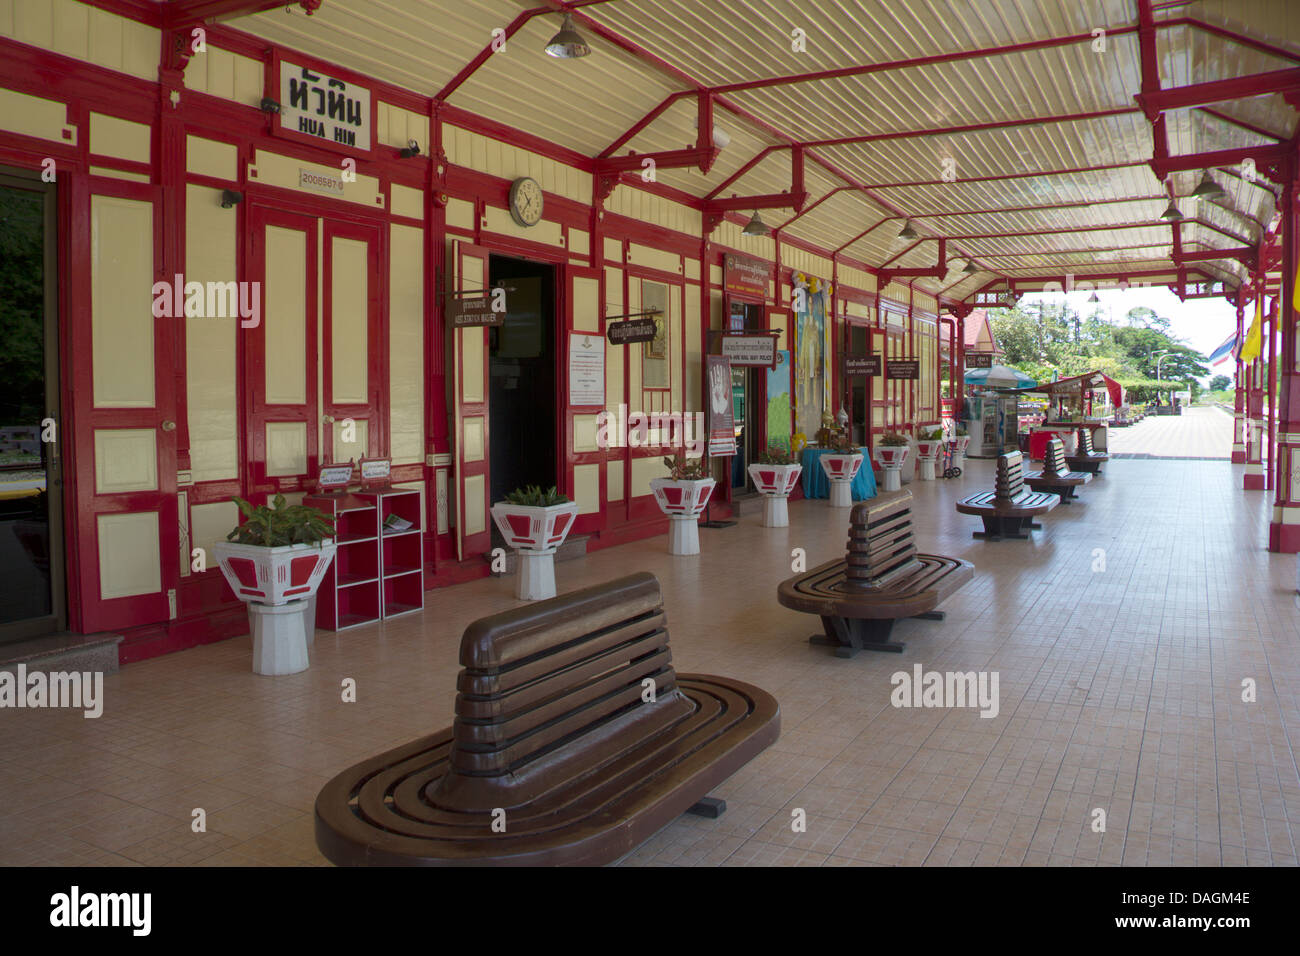 La plate-forme principale à gare de hua hin dans la province de Prachuap Khiri Khan, Thaïlande Banque D'Images